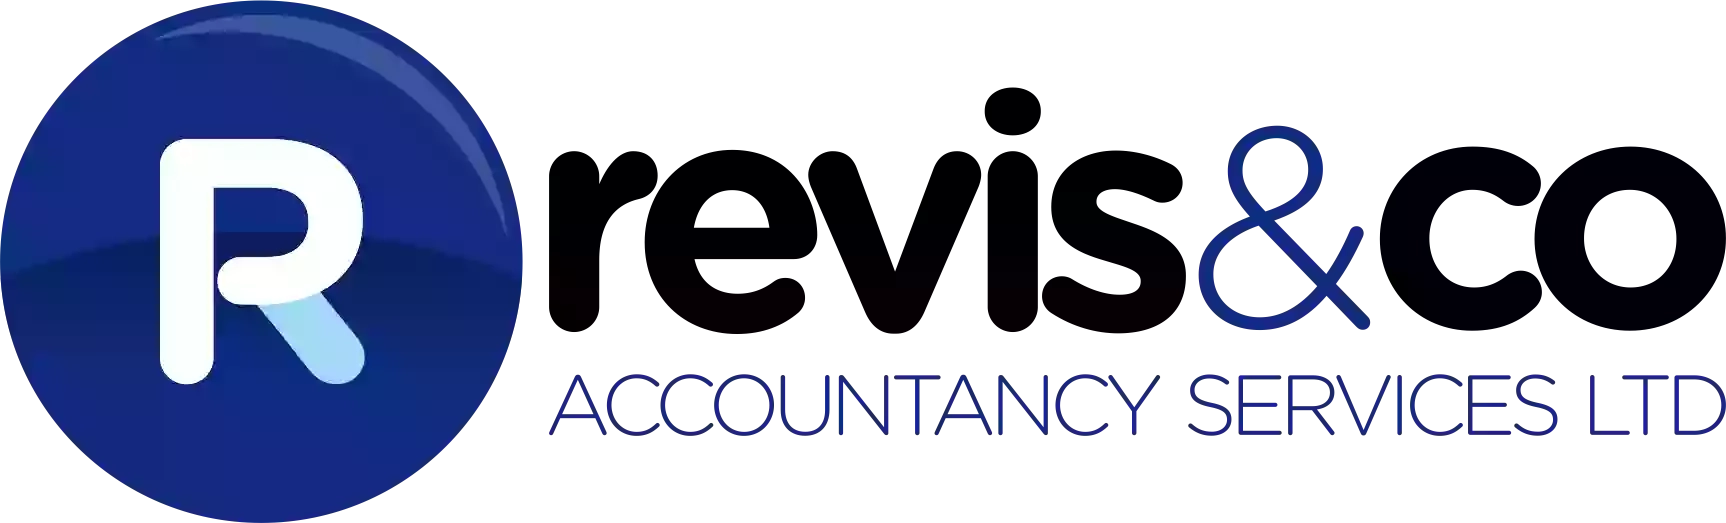 Revis & Co Accountancy Services Ltd